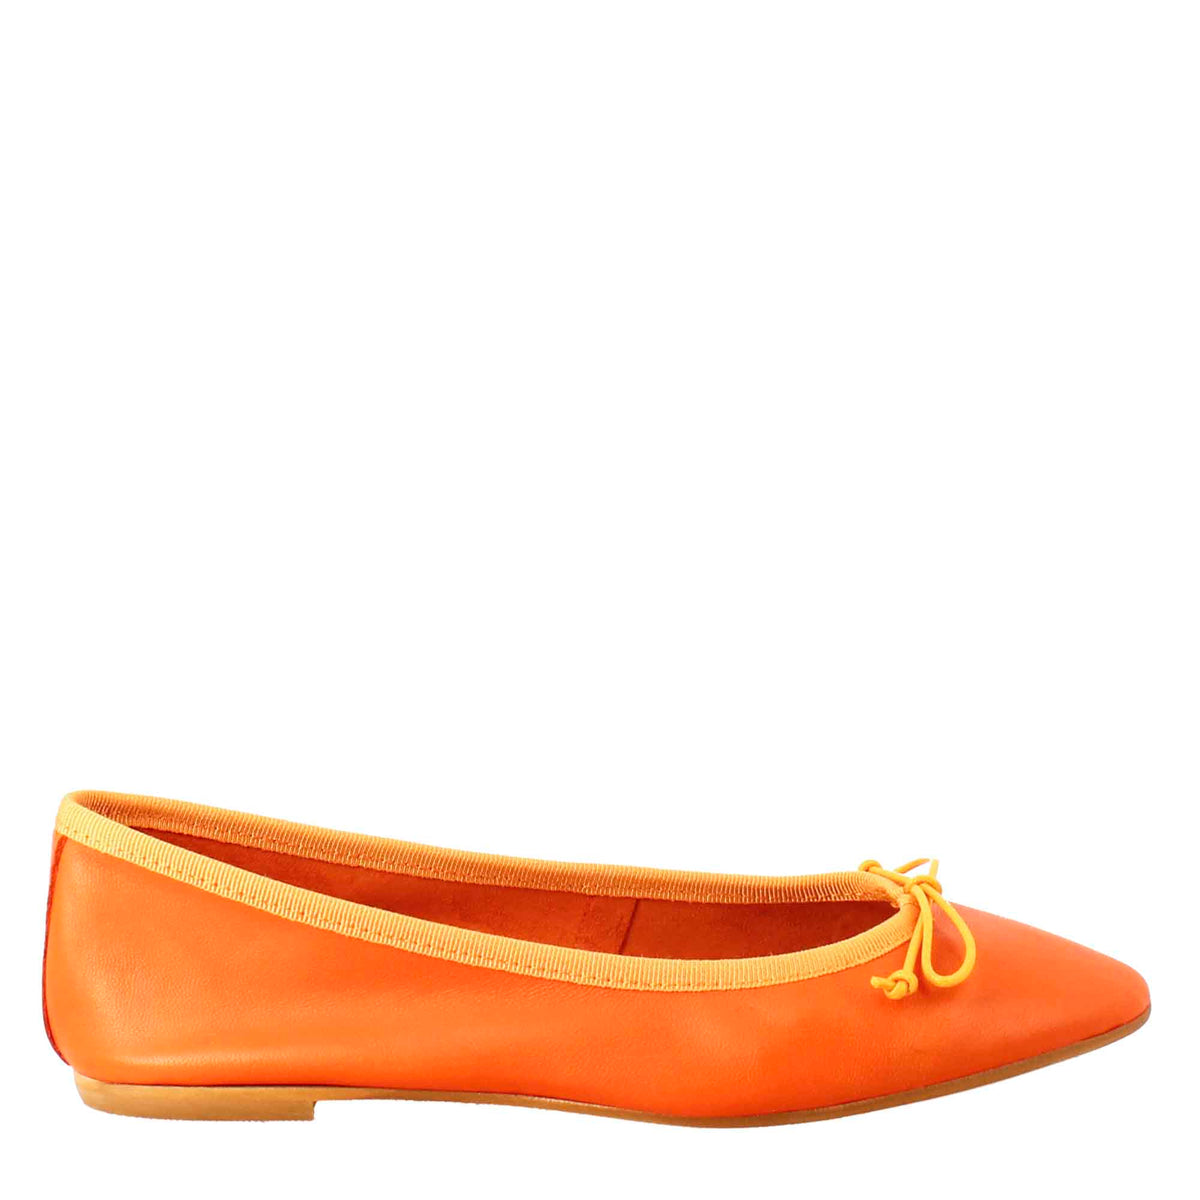 Chaussures plates orange légères pour femmes en cuir lisse